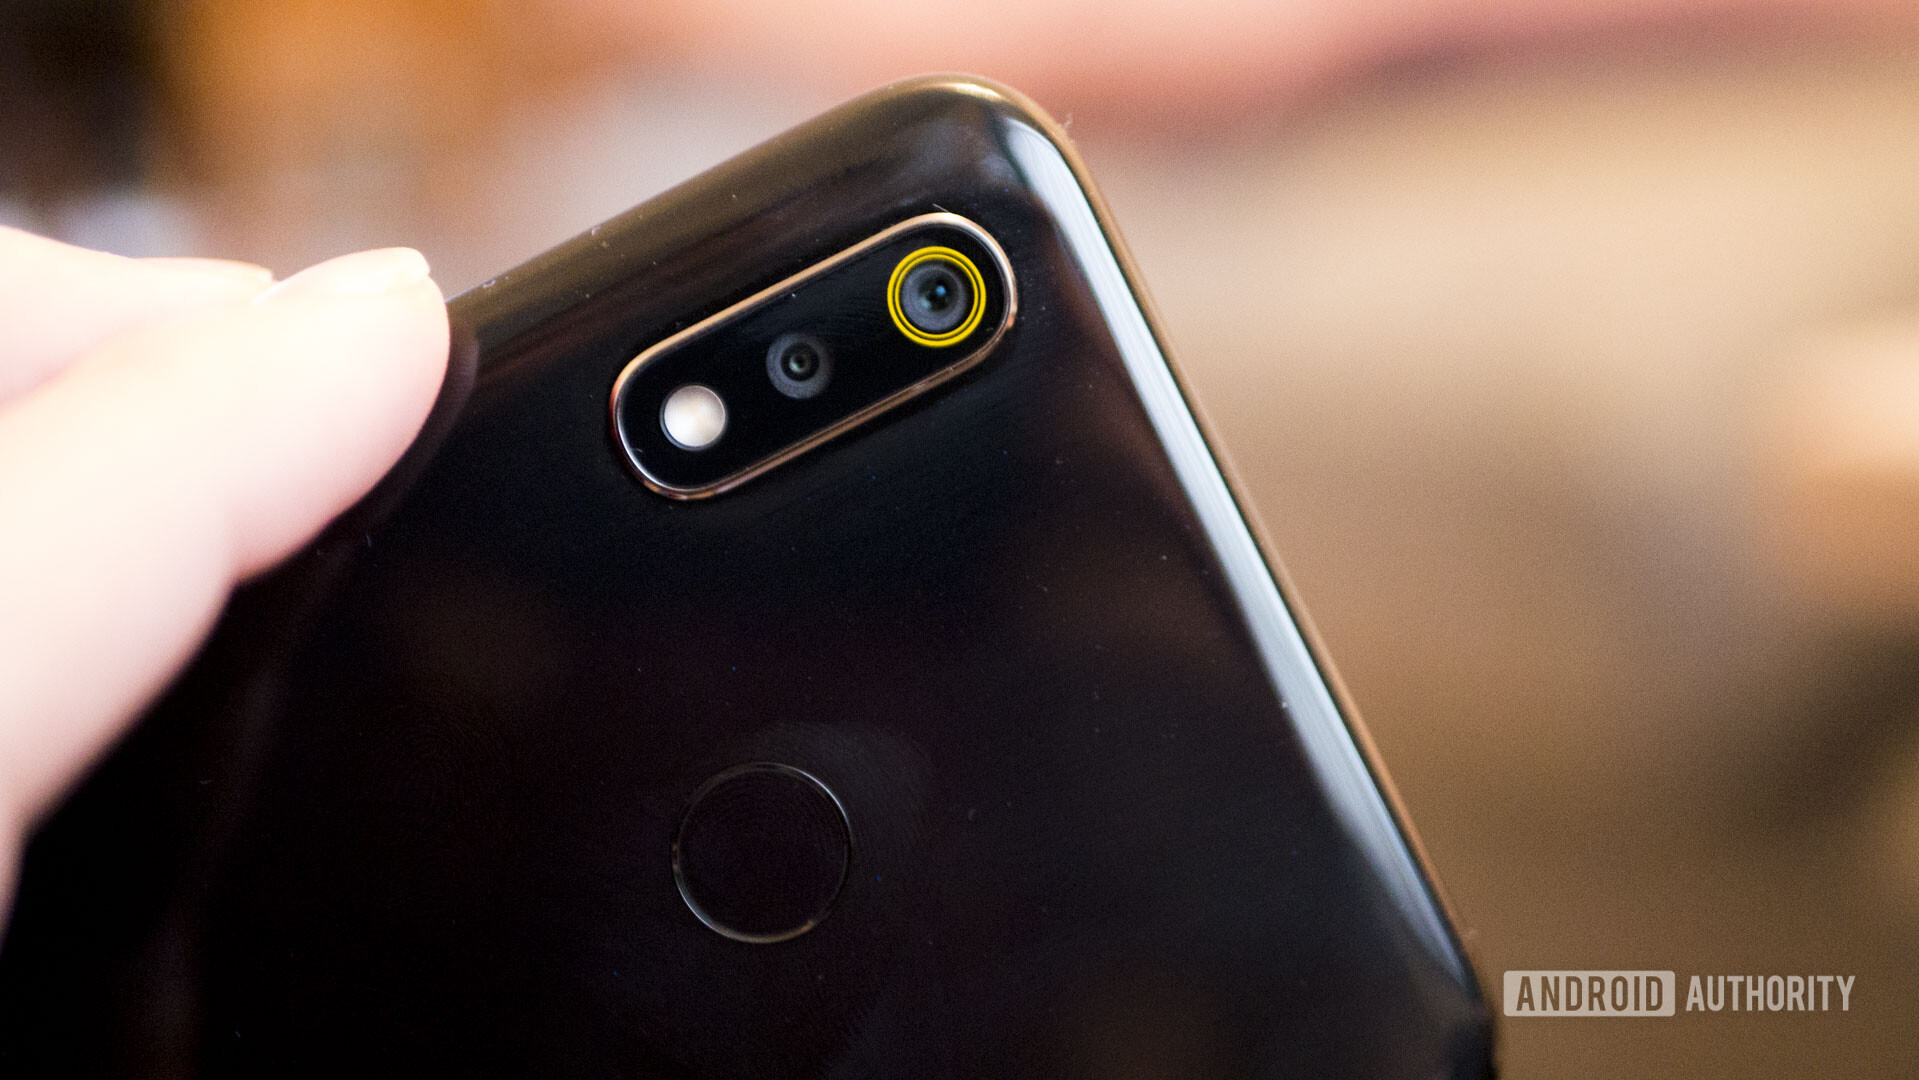 Backside of the Realme 3 focusing on the fingerprint sensor.